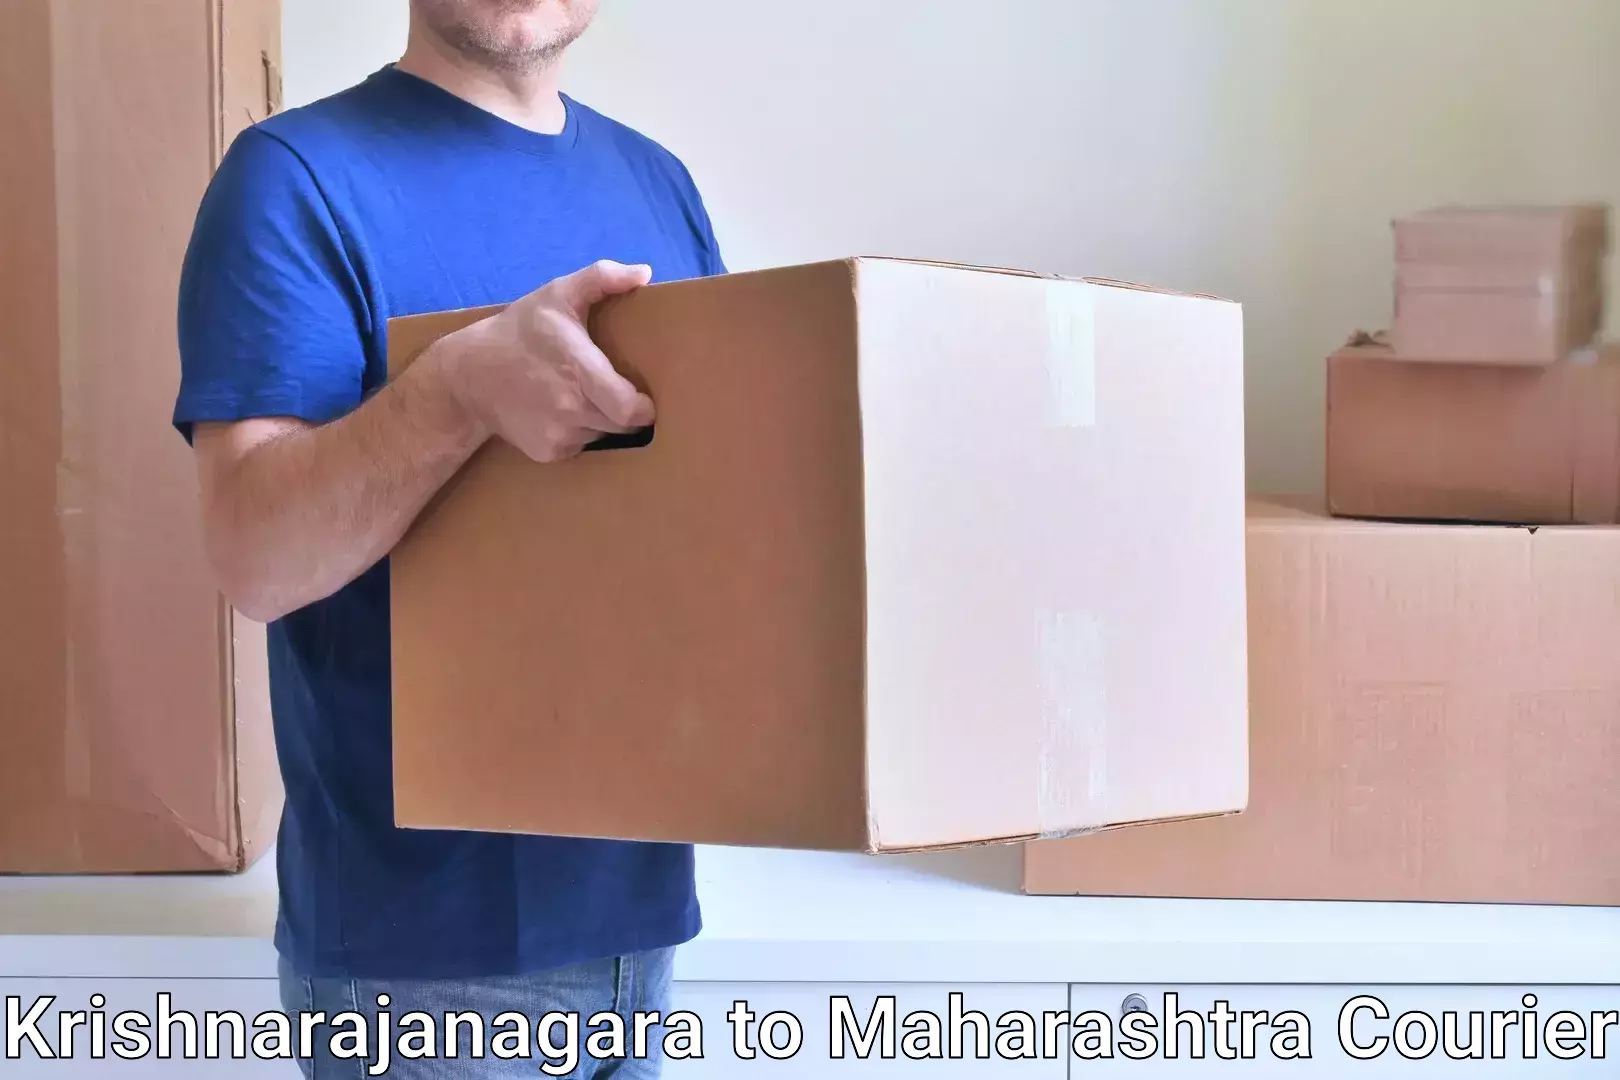 Customizable shipping options in Krishnarajanagara to Worli